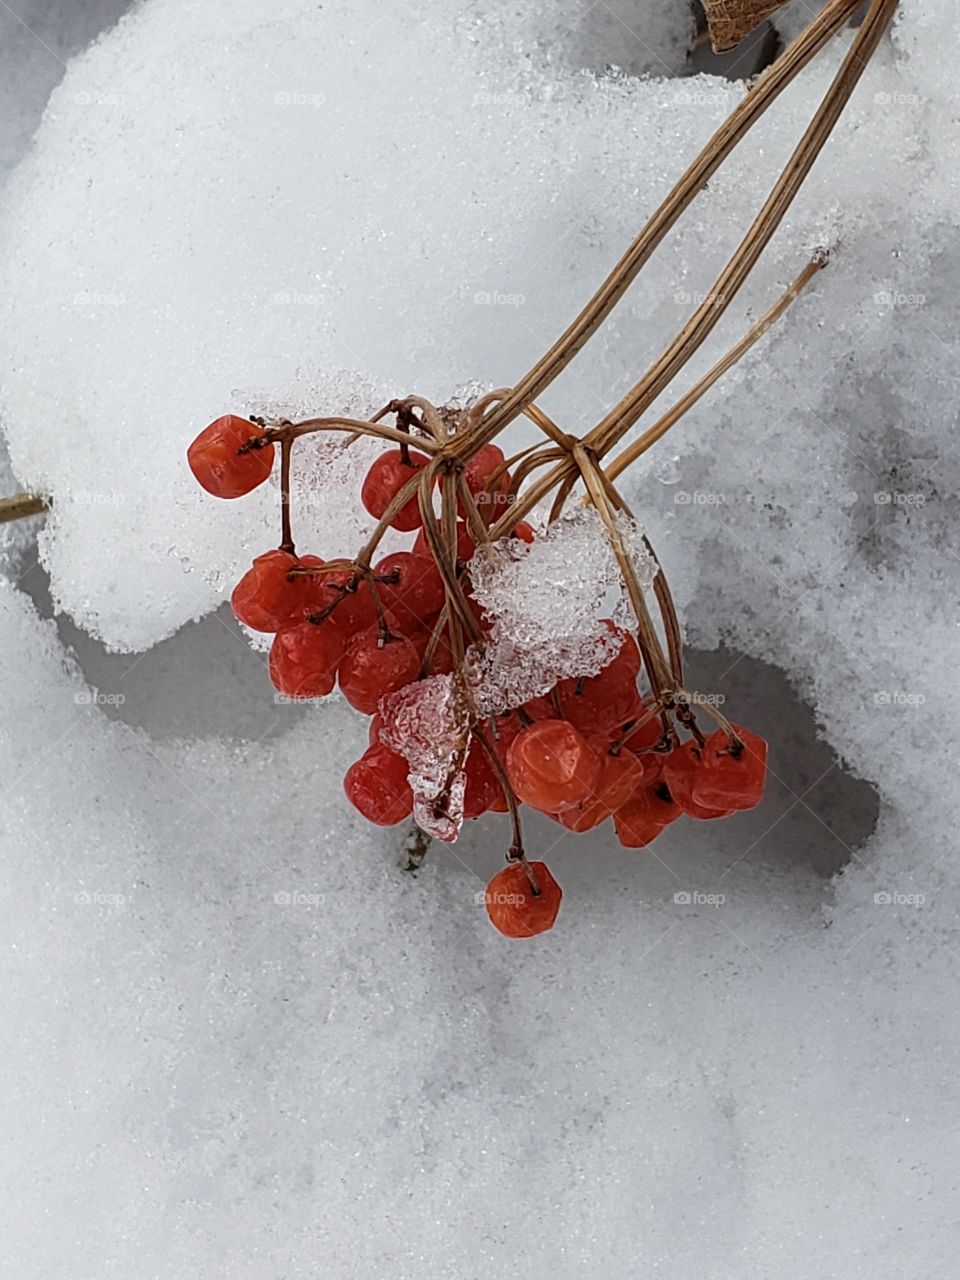 Berries in winter.